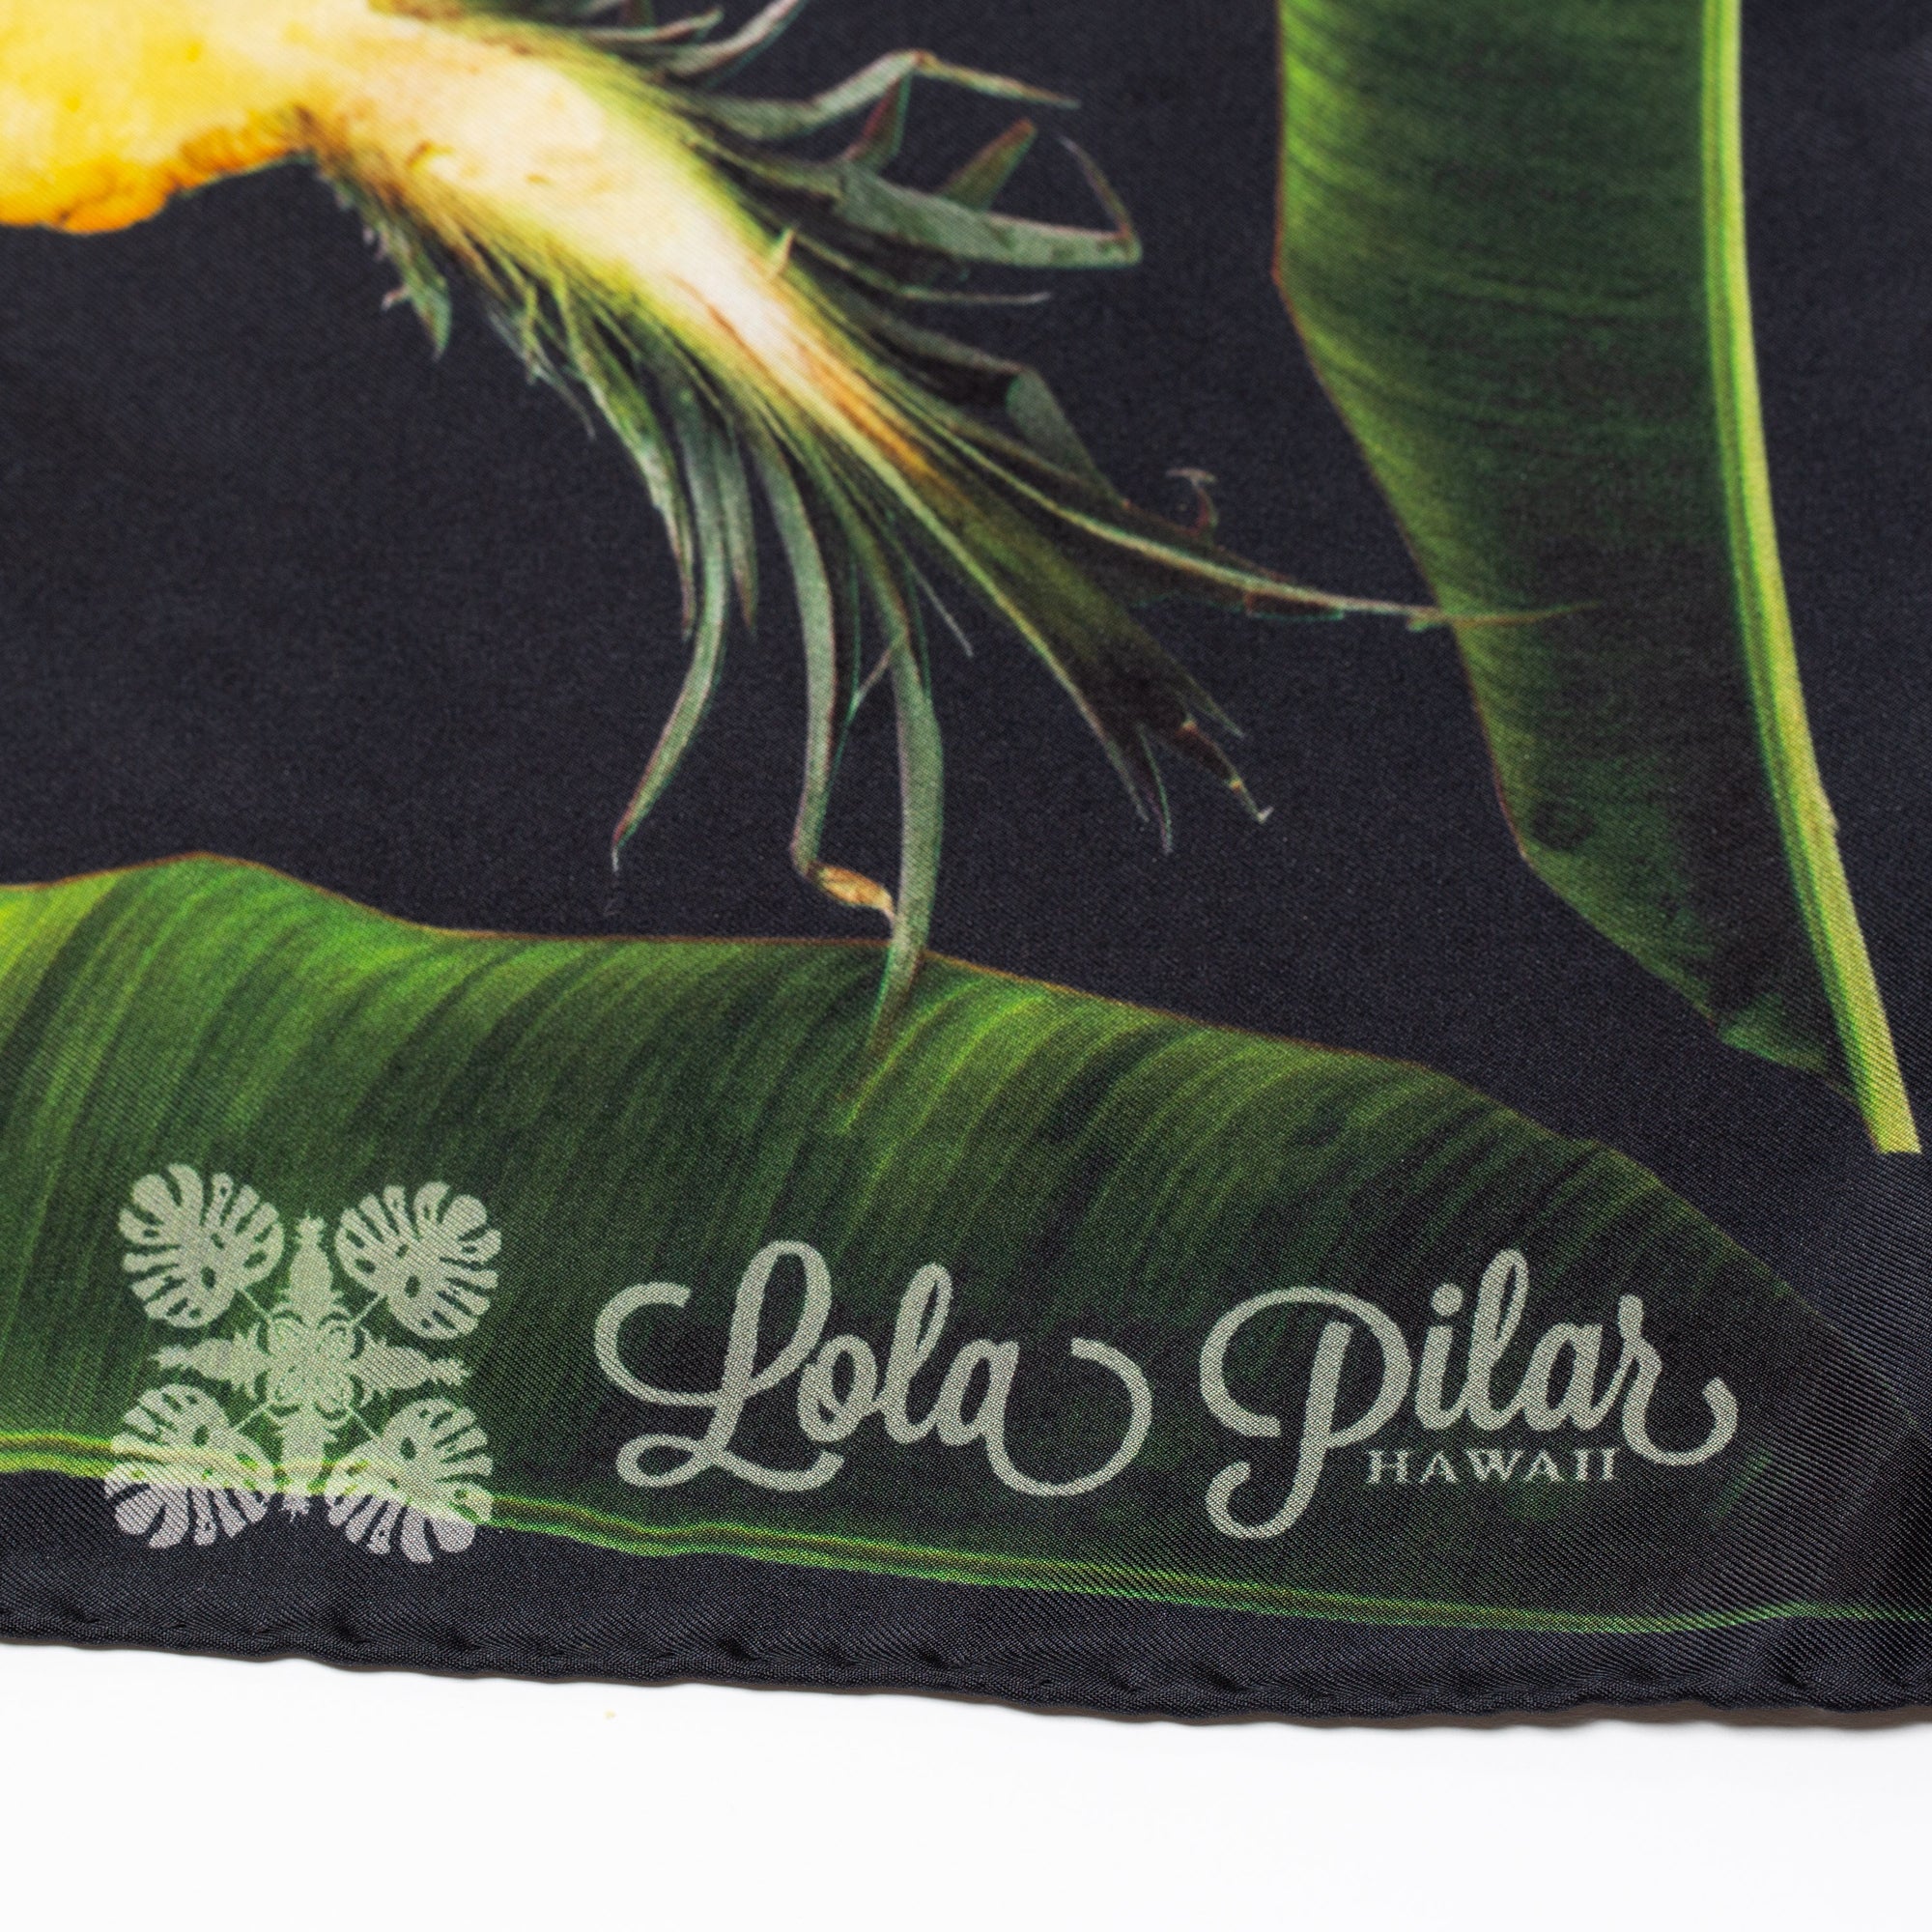 Live A Lei Life Silk Scarf - Black or Army Green - Lola Pilar Hawaii